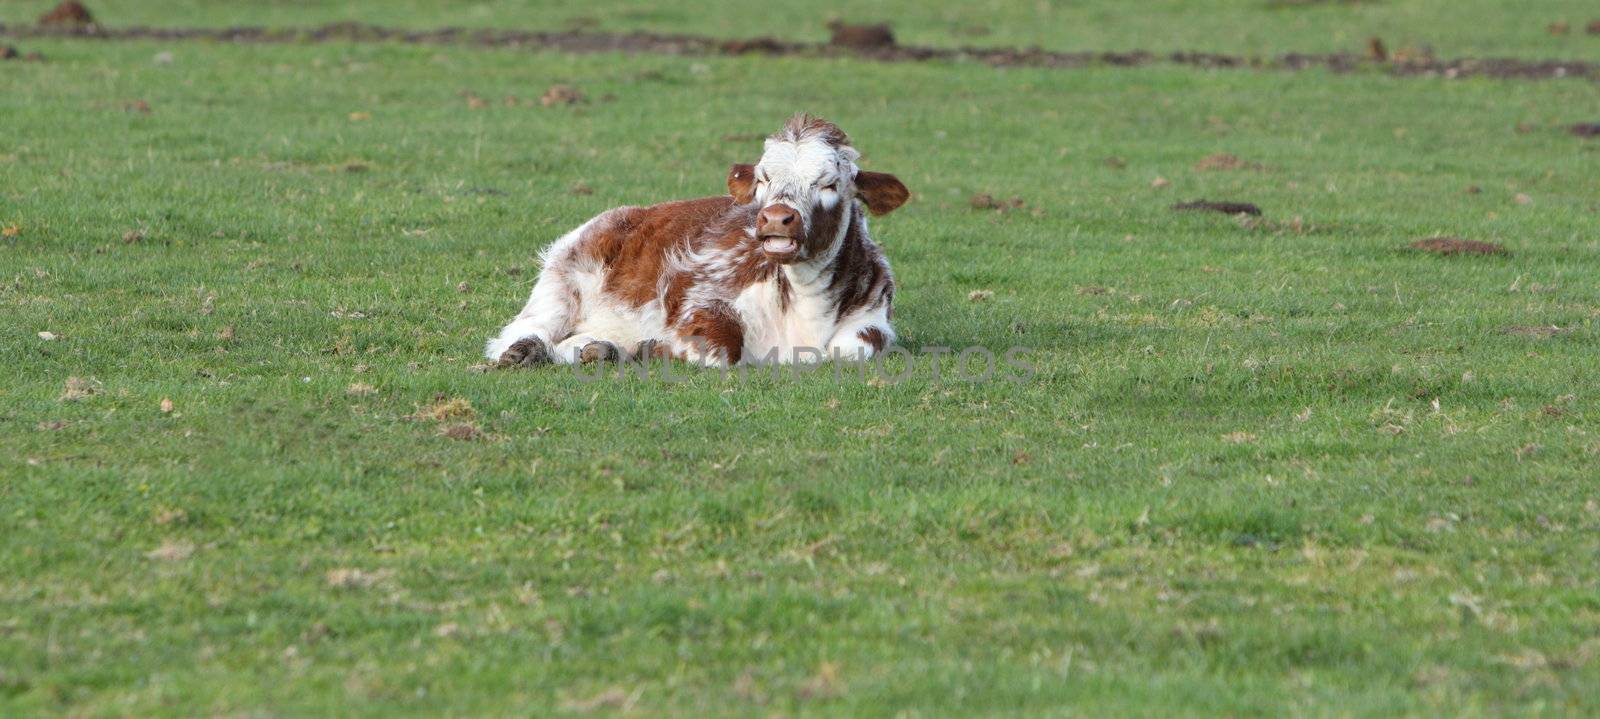 calf lying down